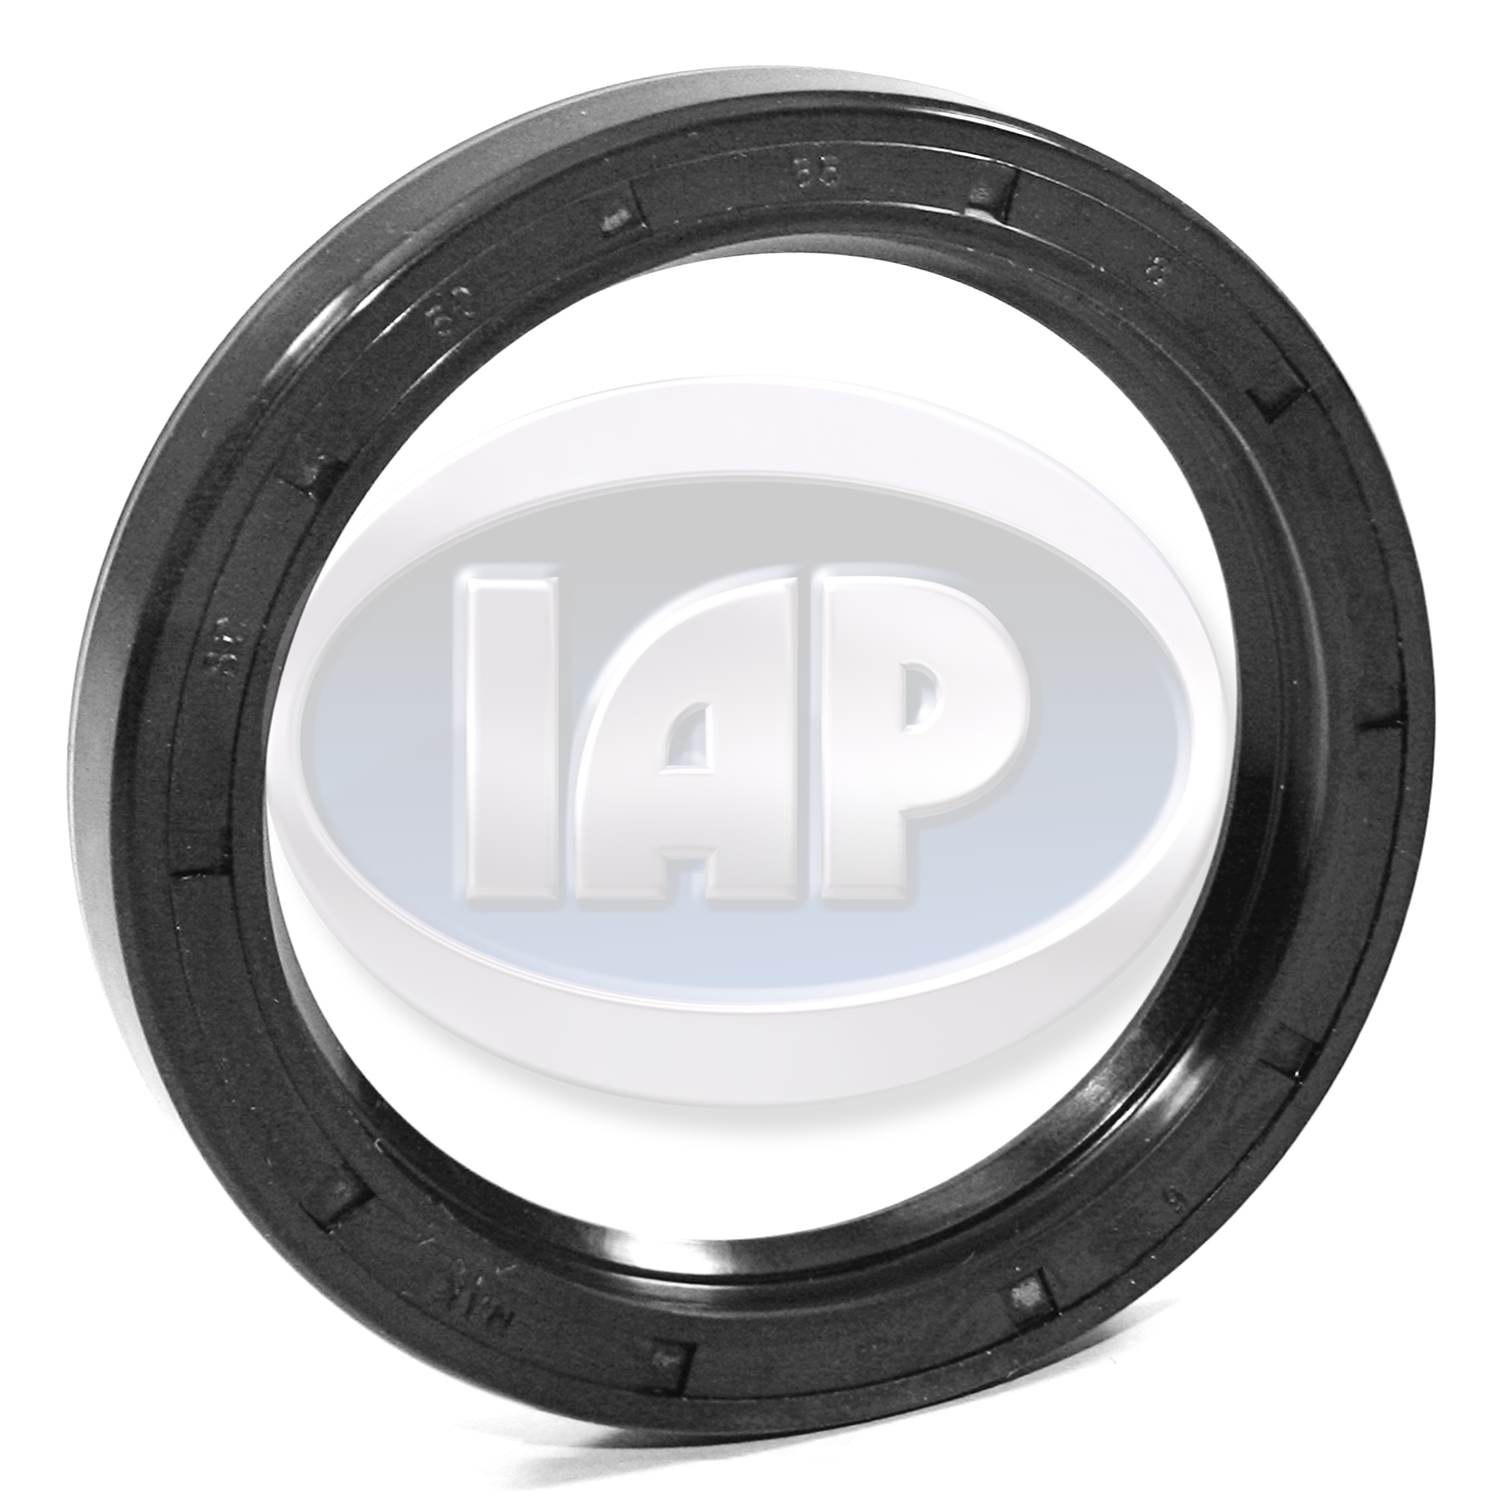 IAP/KUHLTEK MOTORWERKS - Wheel Seal - KMS 211405641D